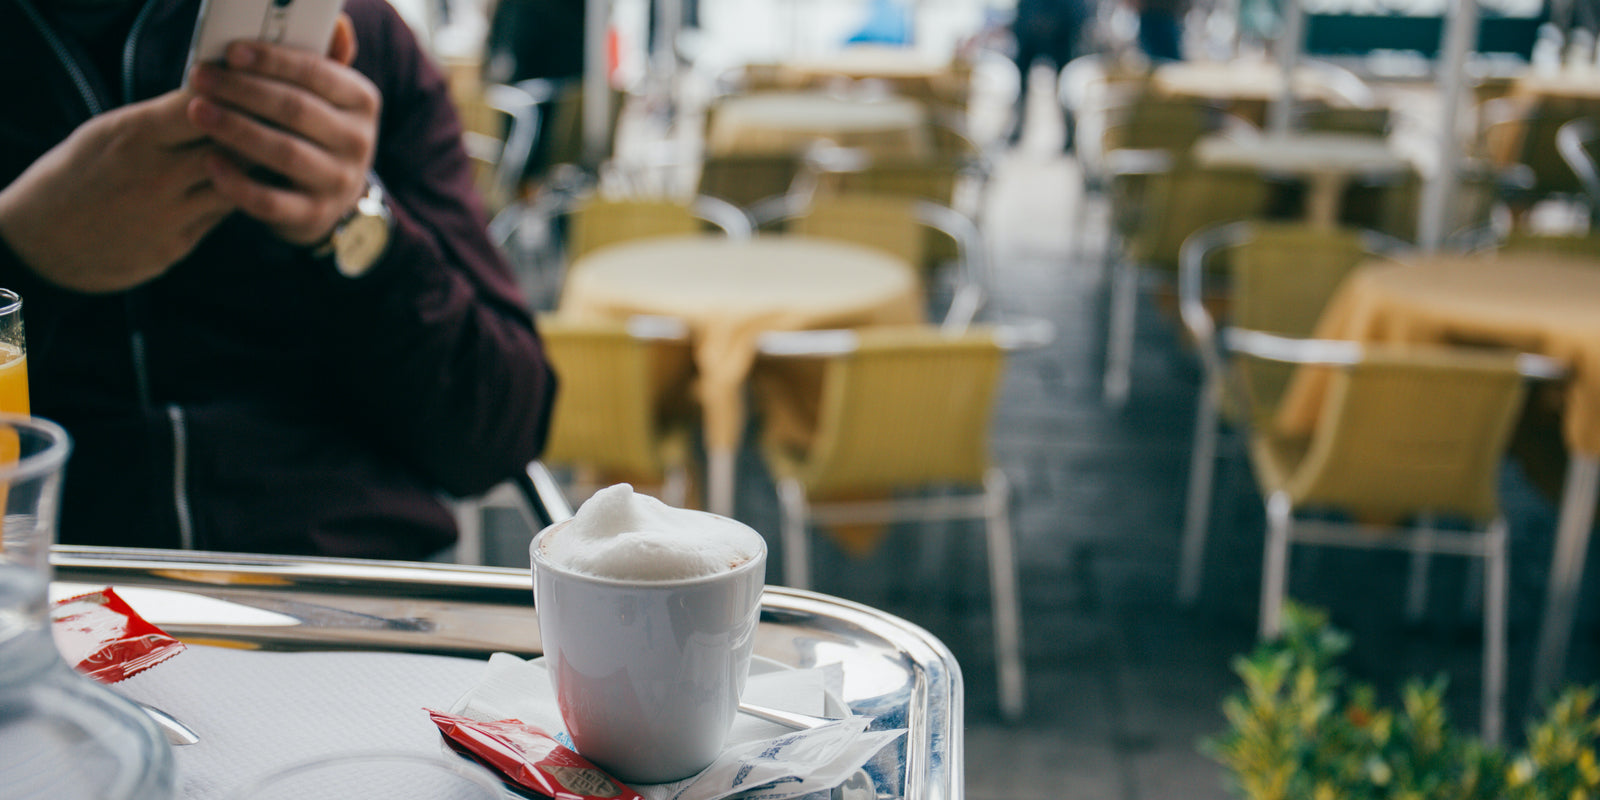 
          
            Tourist enjoying a cappuccino at a café in Italy
          
        